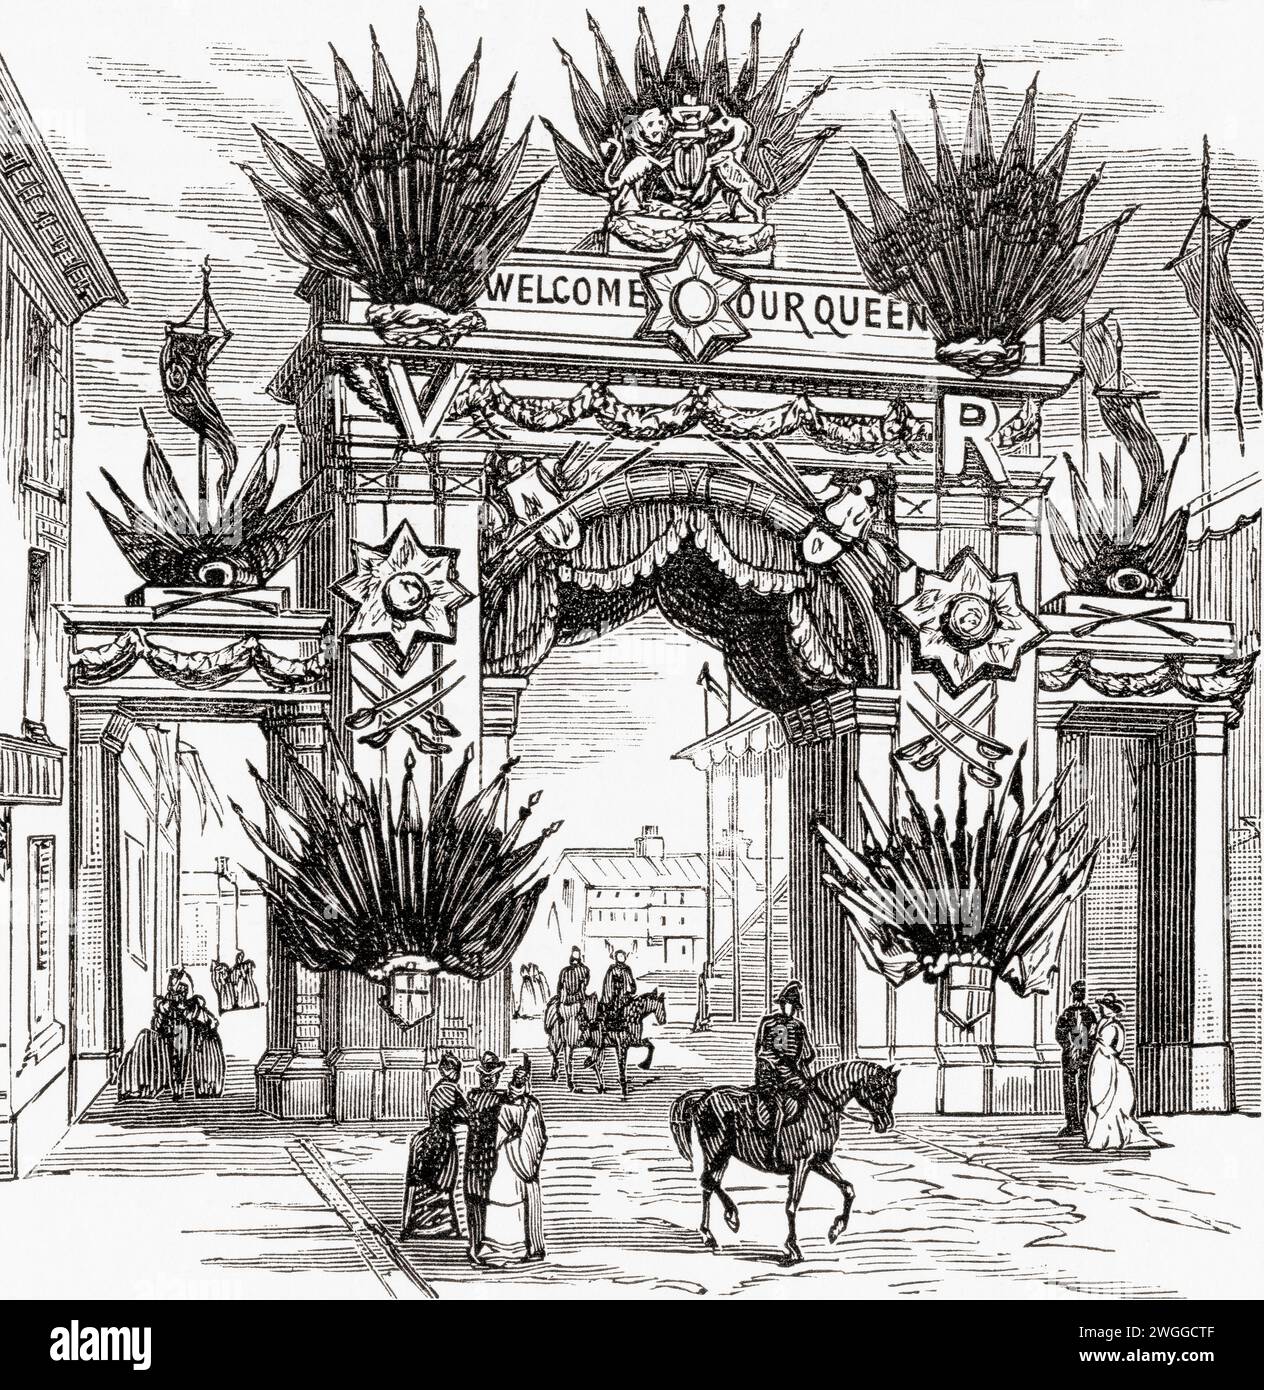 Der Gunmaker's Arch, Costa Green, Birmingham, England, wurde anlässlich des Besuchs von Königin Victoria in Birmingham am 23. März 1887, dem Jahr des Goldenen Jubiläums, errichtet. From the London Illustrated News, veröffentlicht am 26. März 1887. Stockfoto